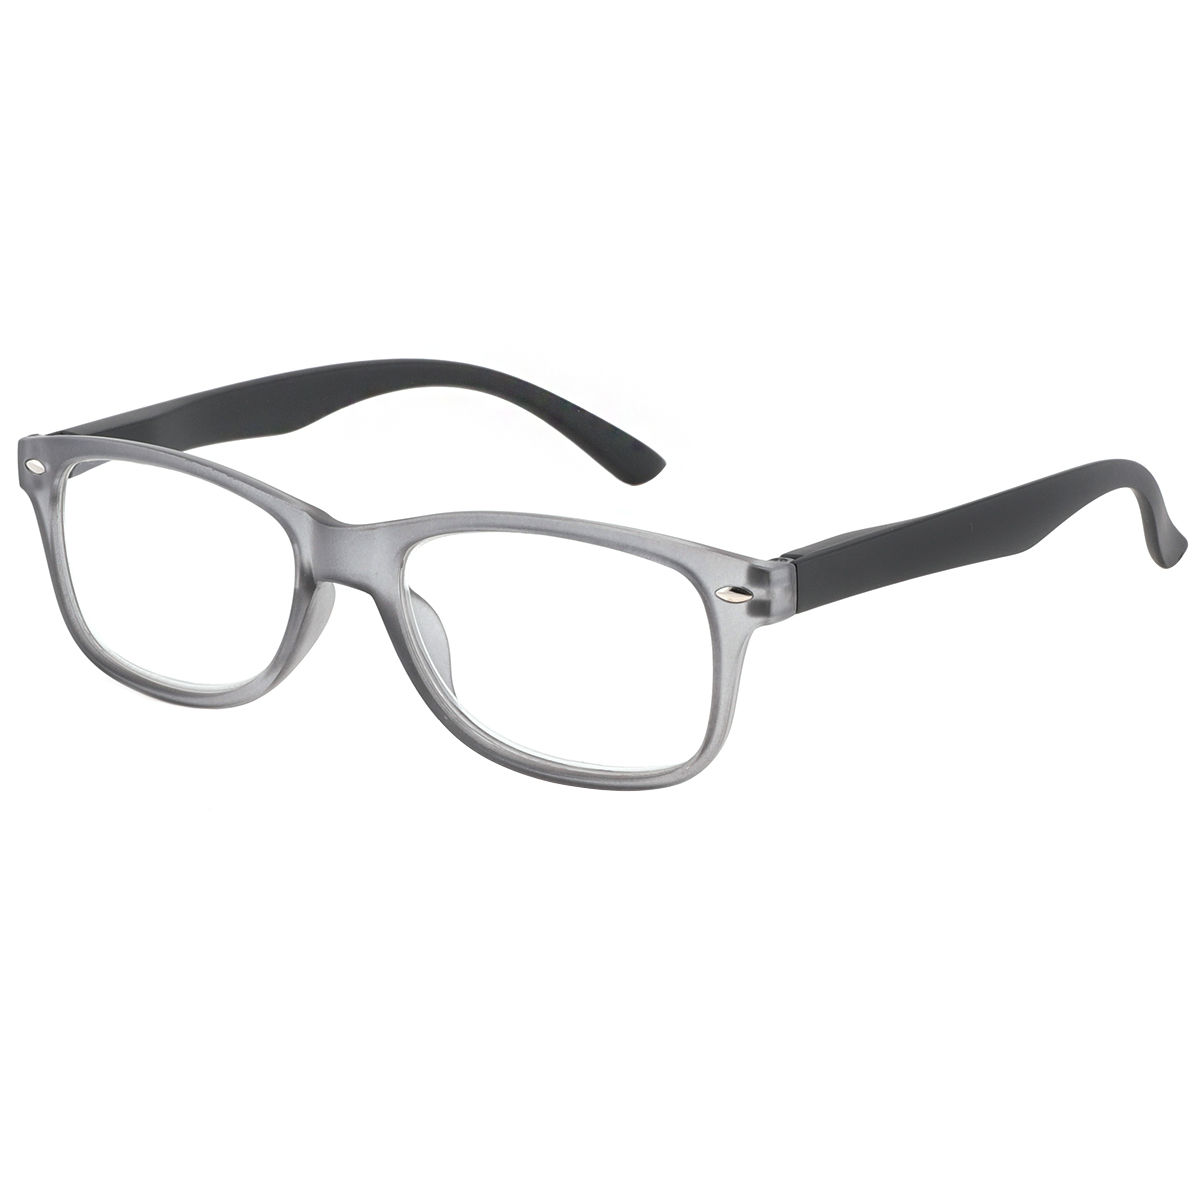 Lege - Rectangle Gray Reading Glasses for Men & Women